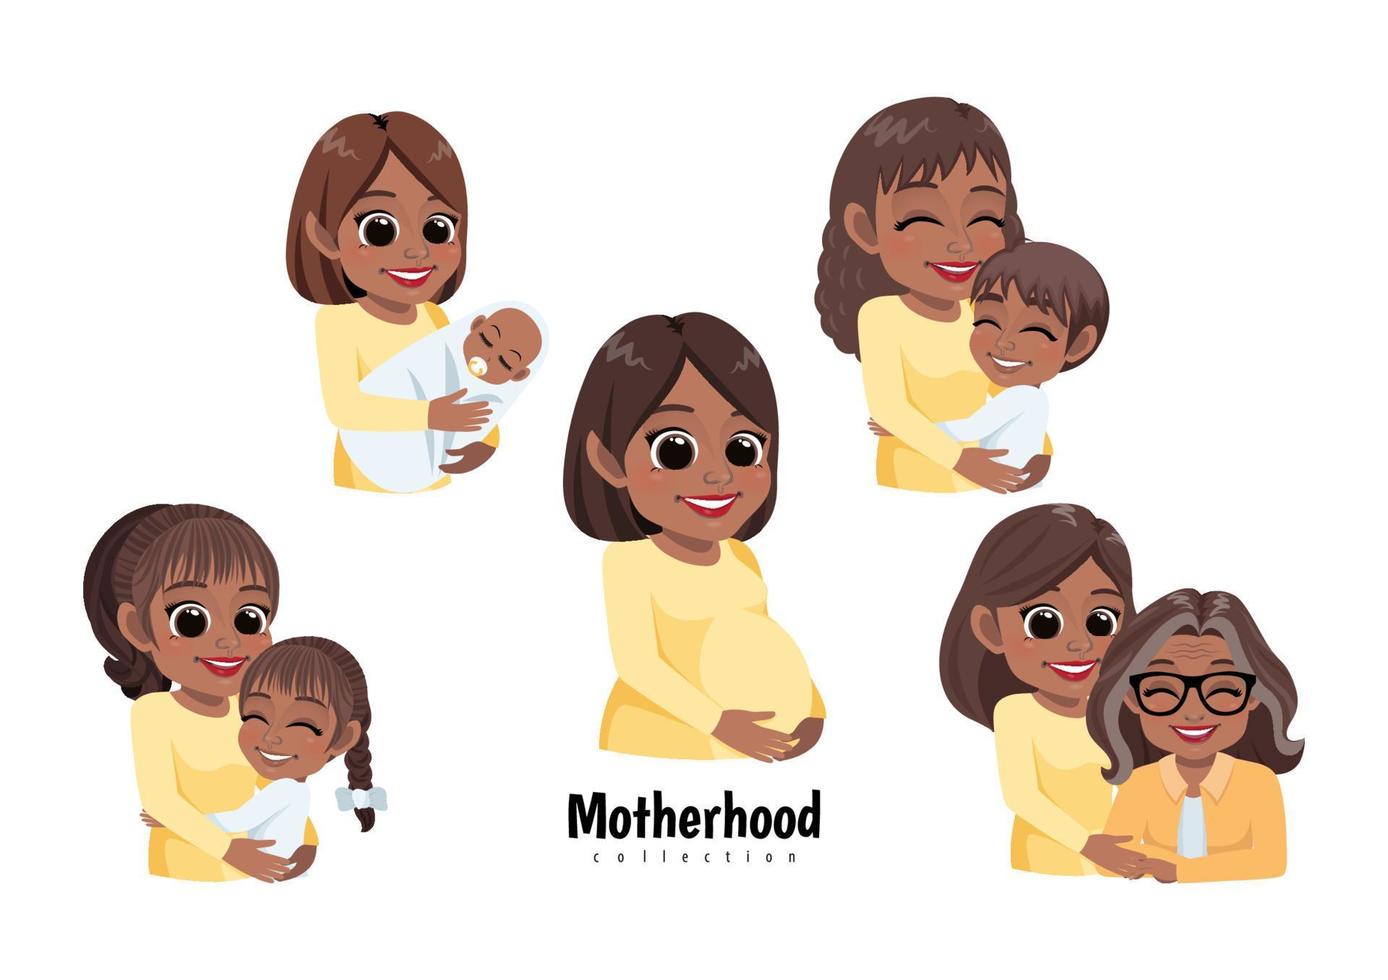 bonne fête des mères avec des mamans africaines américaines avec leurs enfants d'âges différents, femme enceinte. maternité, parentalité, enfance, vecteur de concept de famille noire heureuse